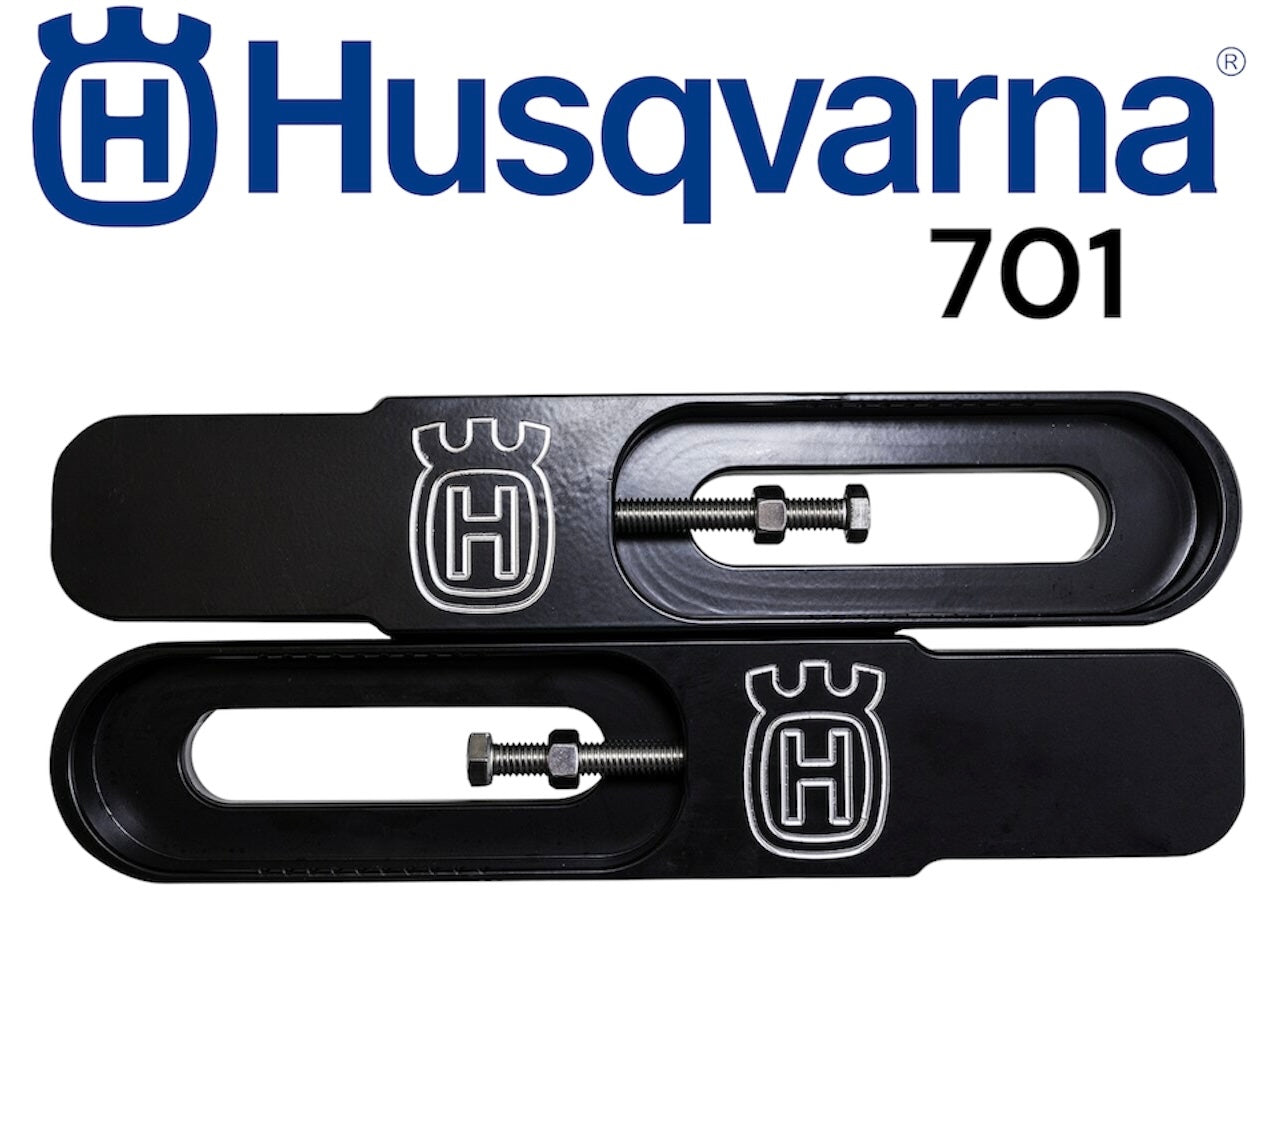 Husqvarna 701 extension